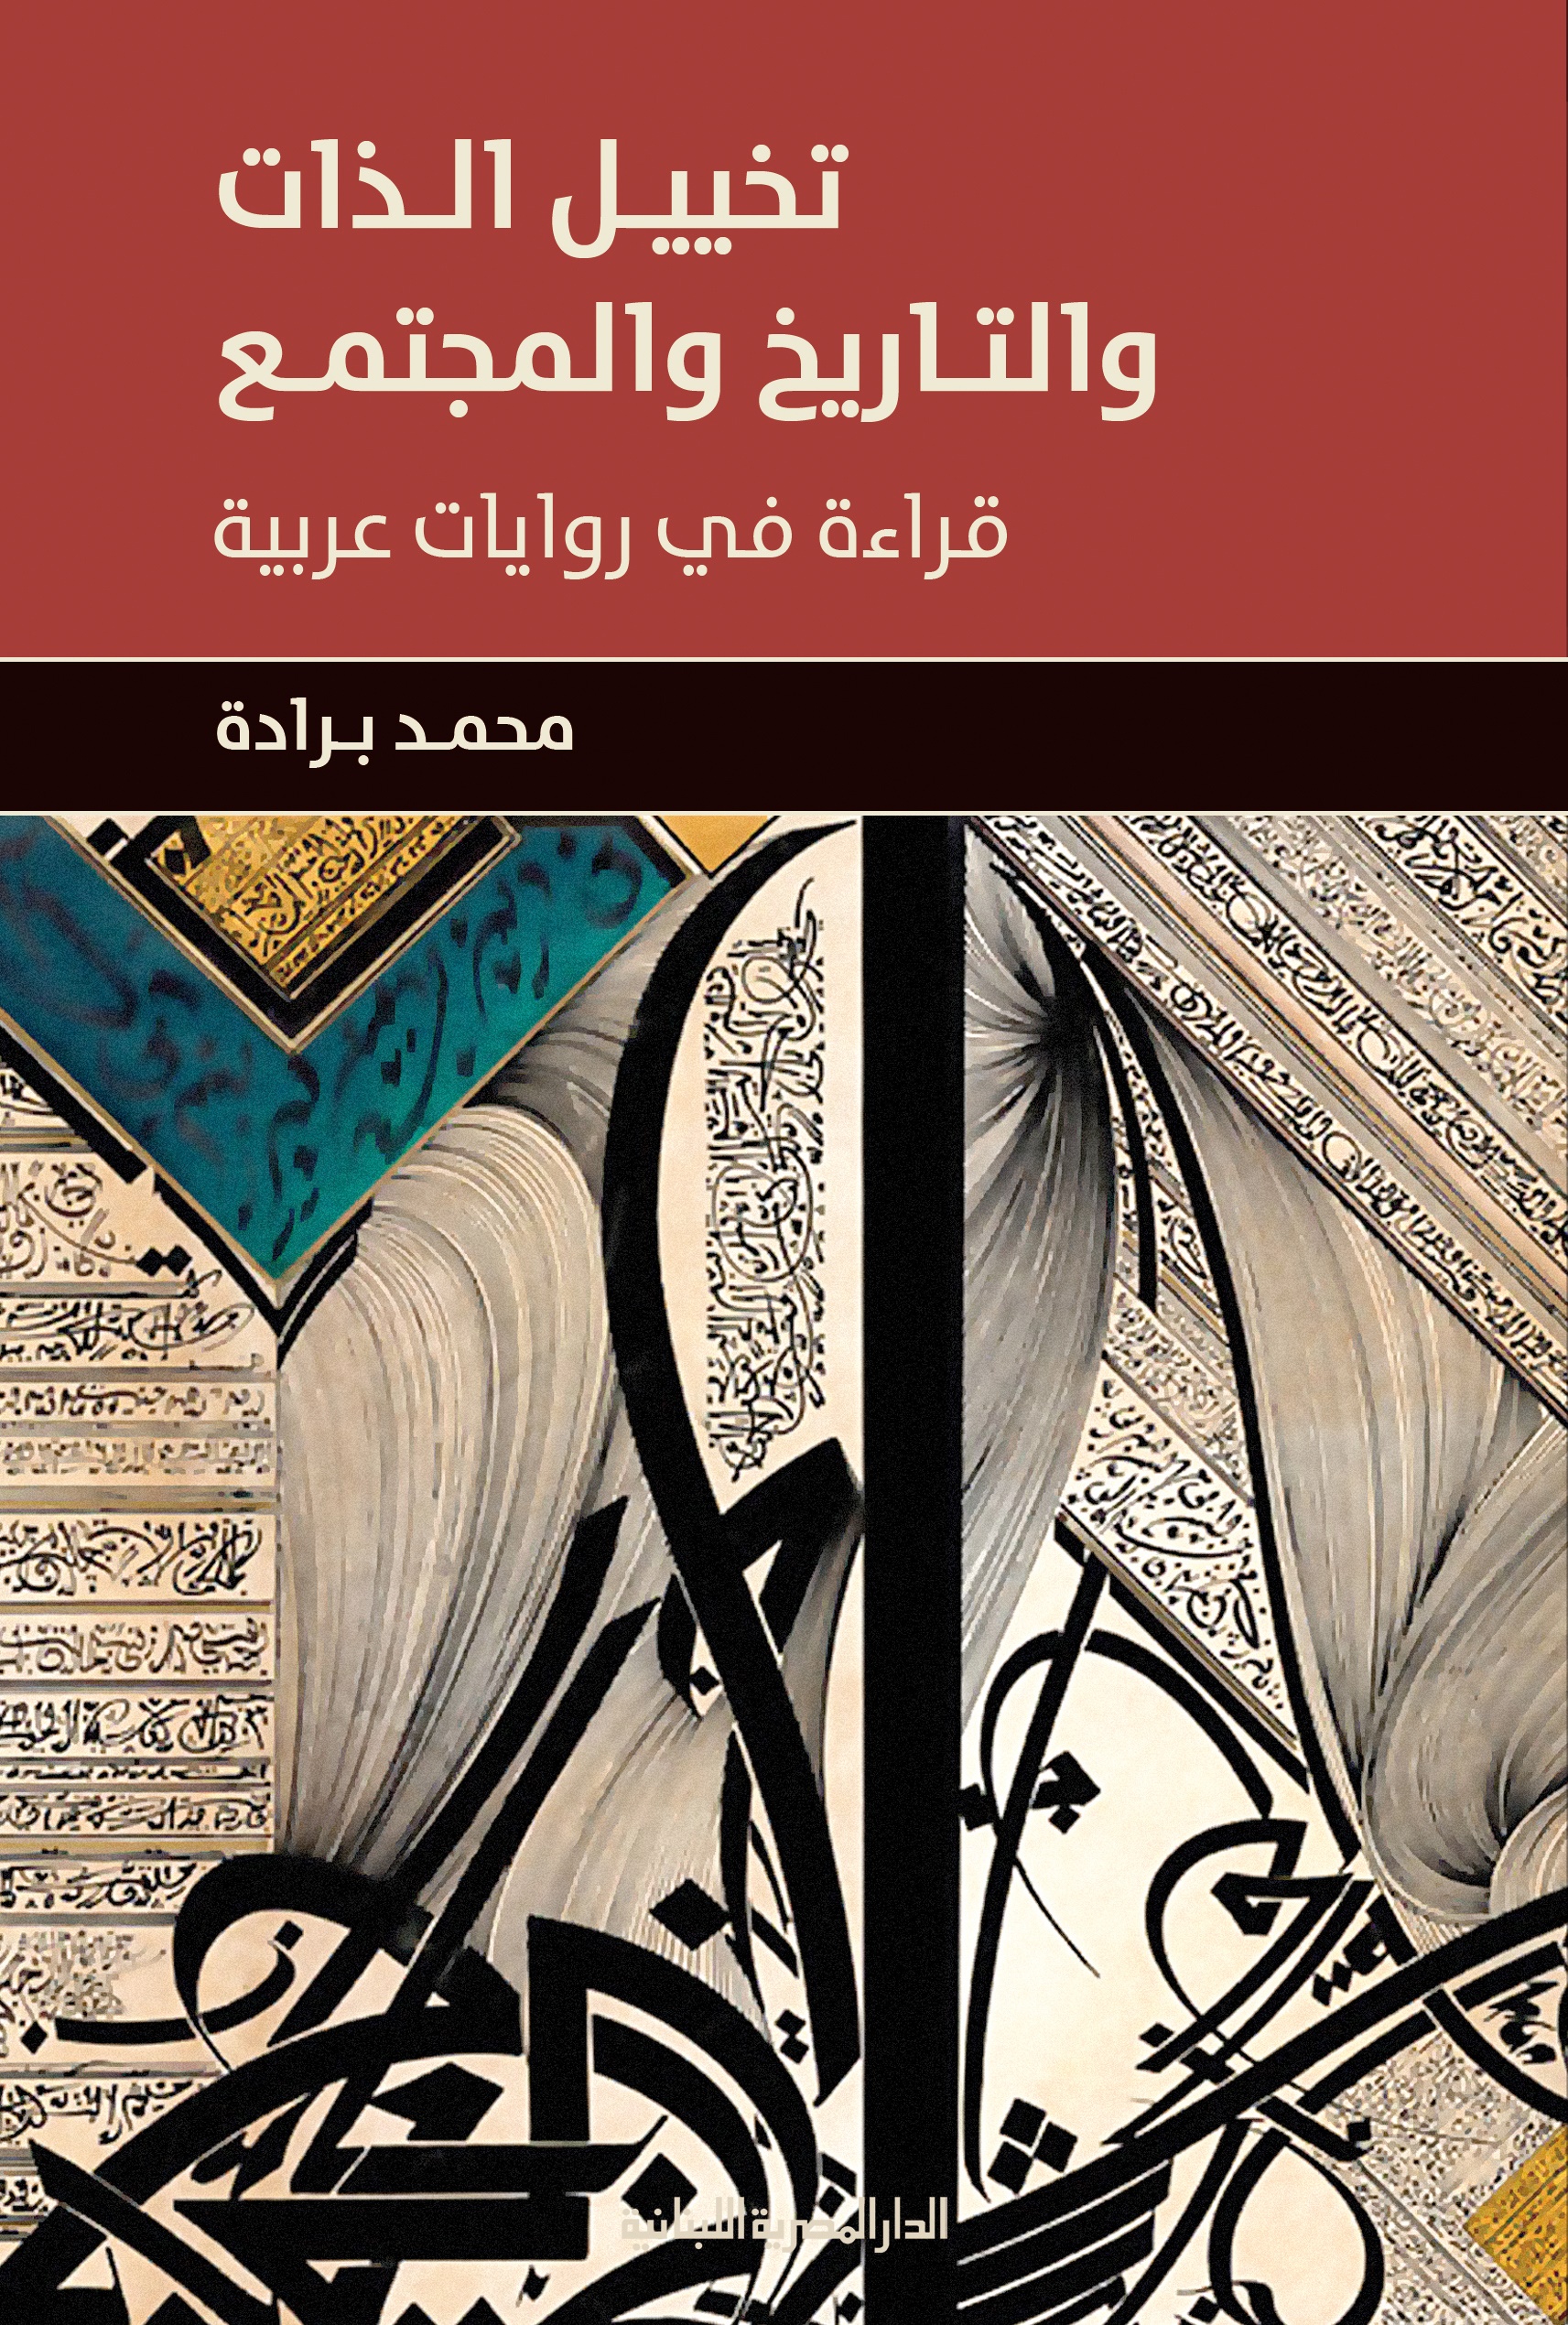 تخيل الذات والتاريخ والمجتمع " قراءة في روايات عربية "